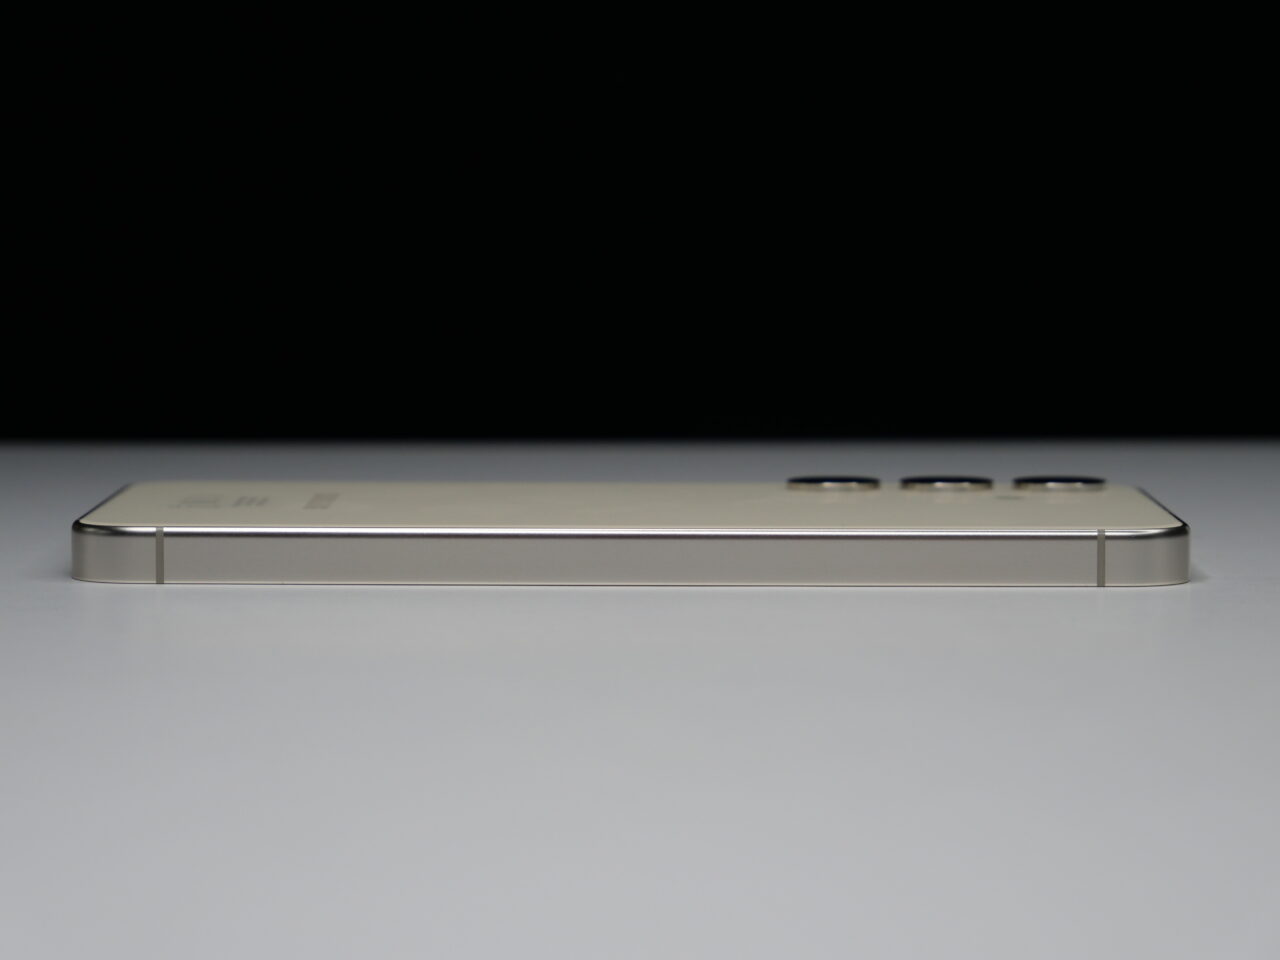 Zbliżenie na złoty smartfon leżący bokiem, na białej powierzchni i ciemnym tle, widać przyciski i porty.